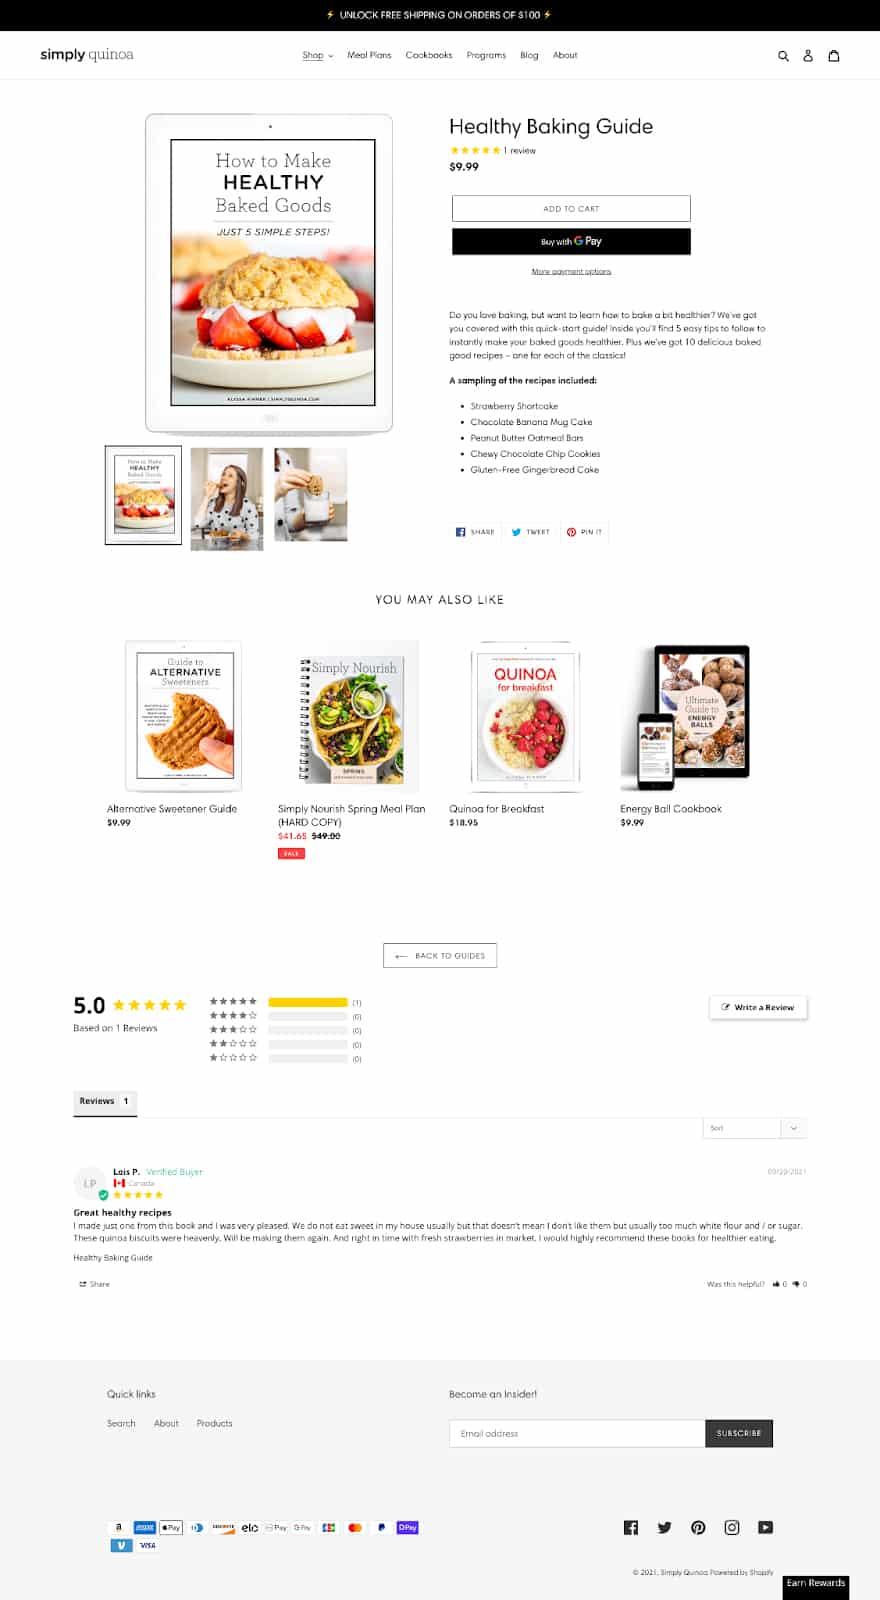 简单的藜麦的产品页面与图书指南销售。